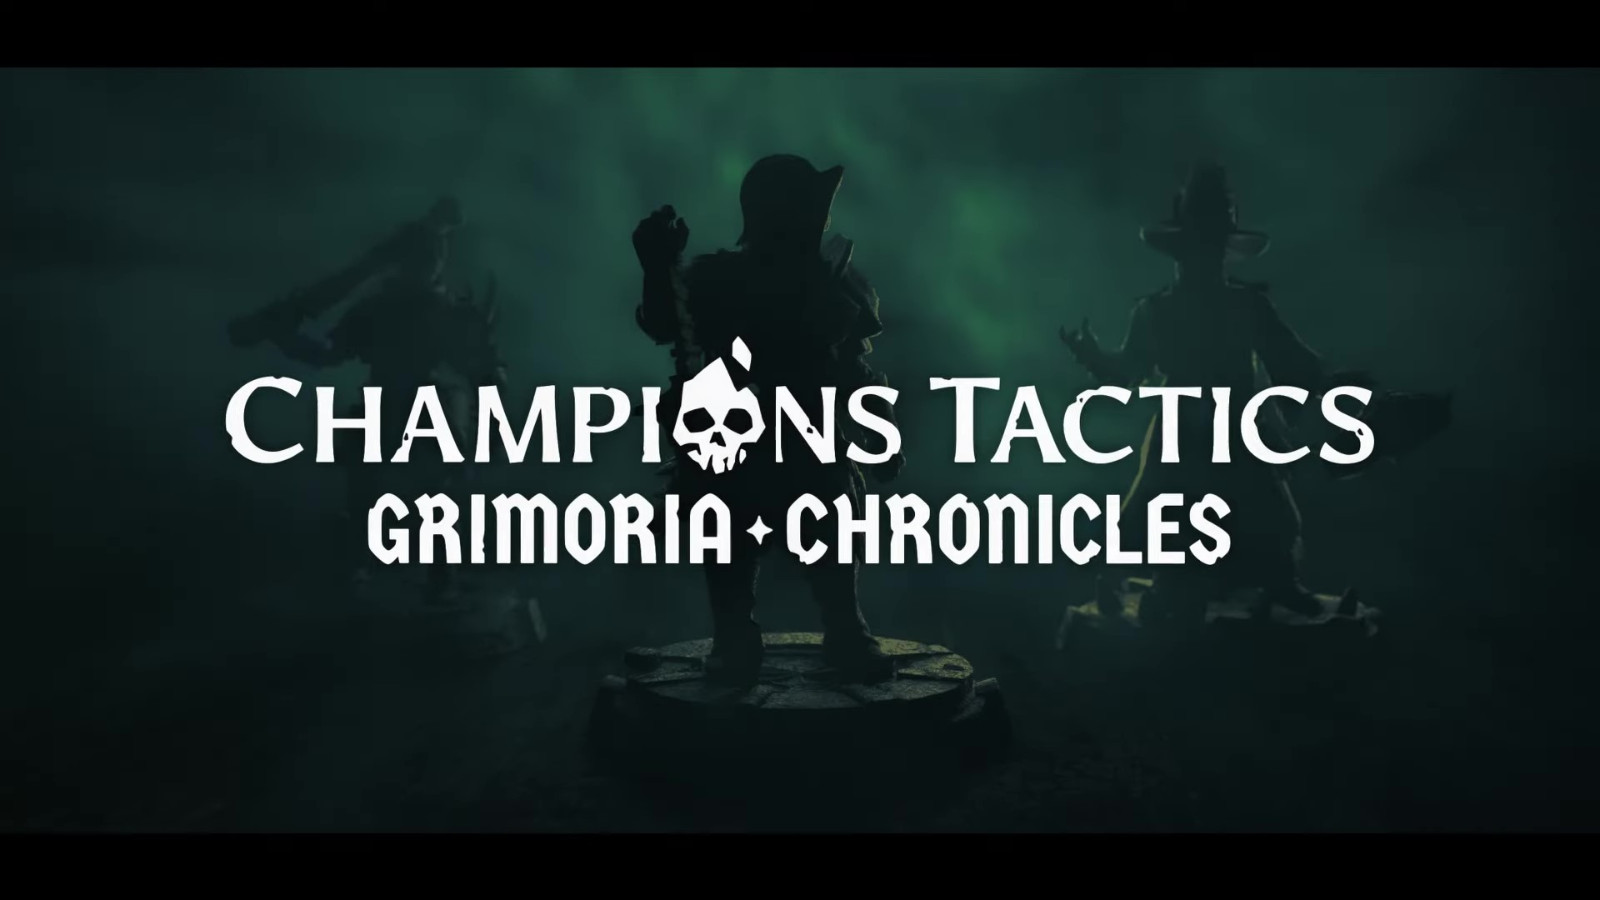 育碧区块链游戏《Champions Tactics》预告公开 仅登陆PC